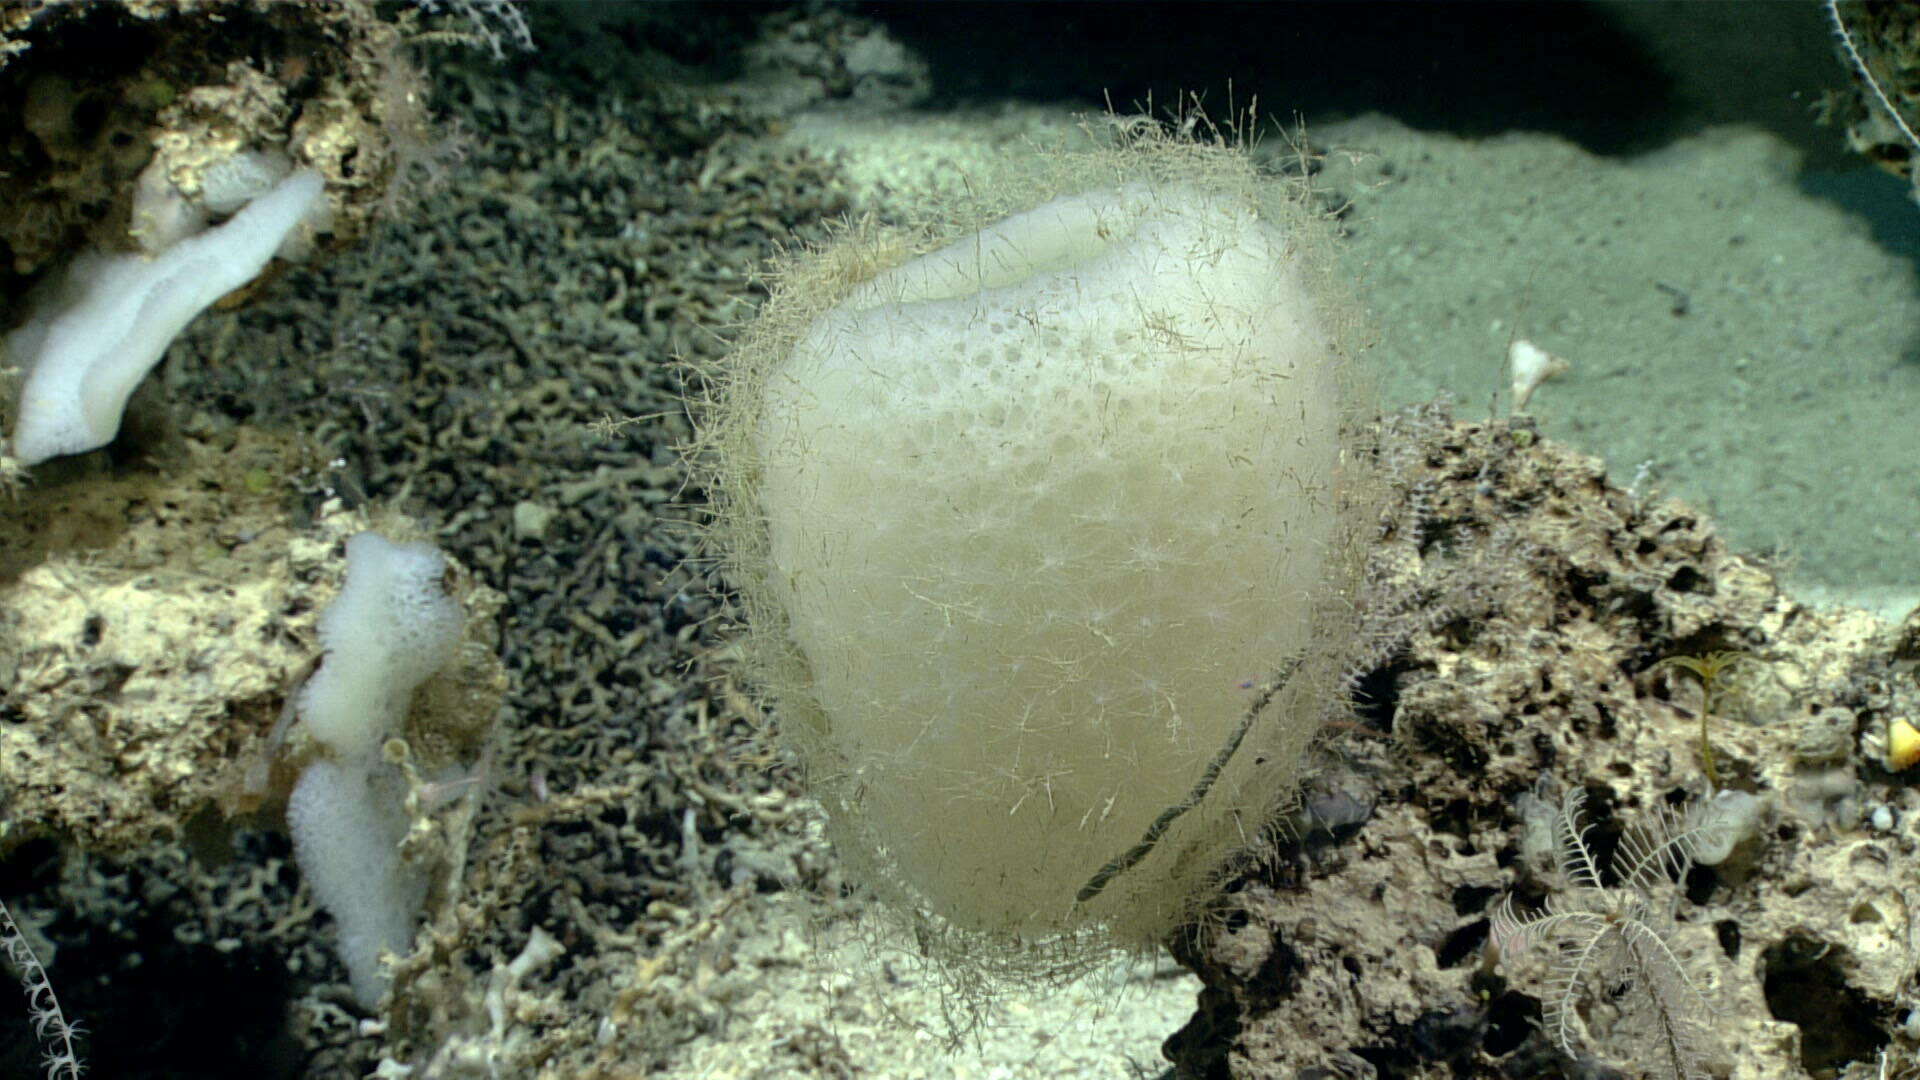 Image of hexactinellid sponges